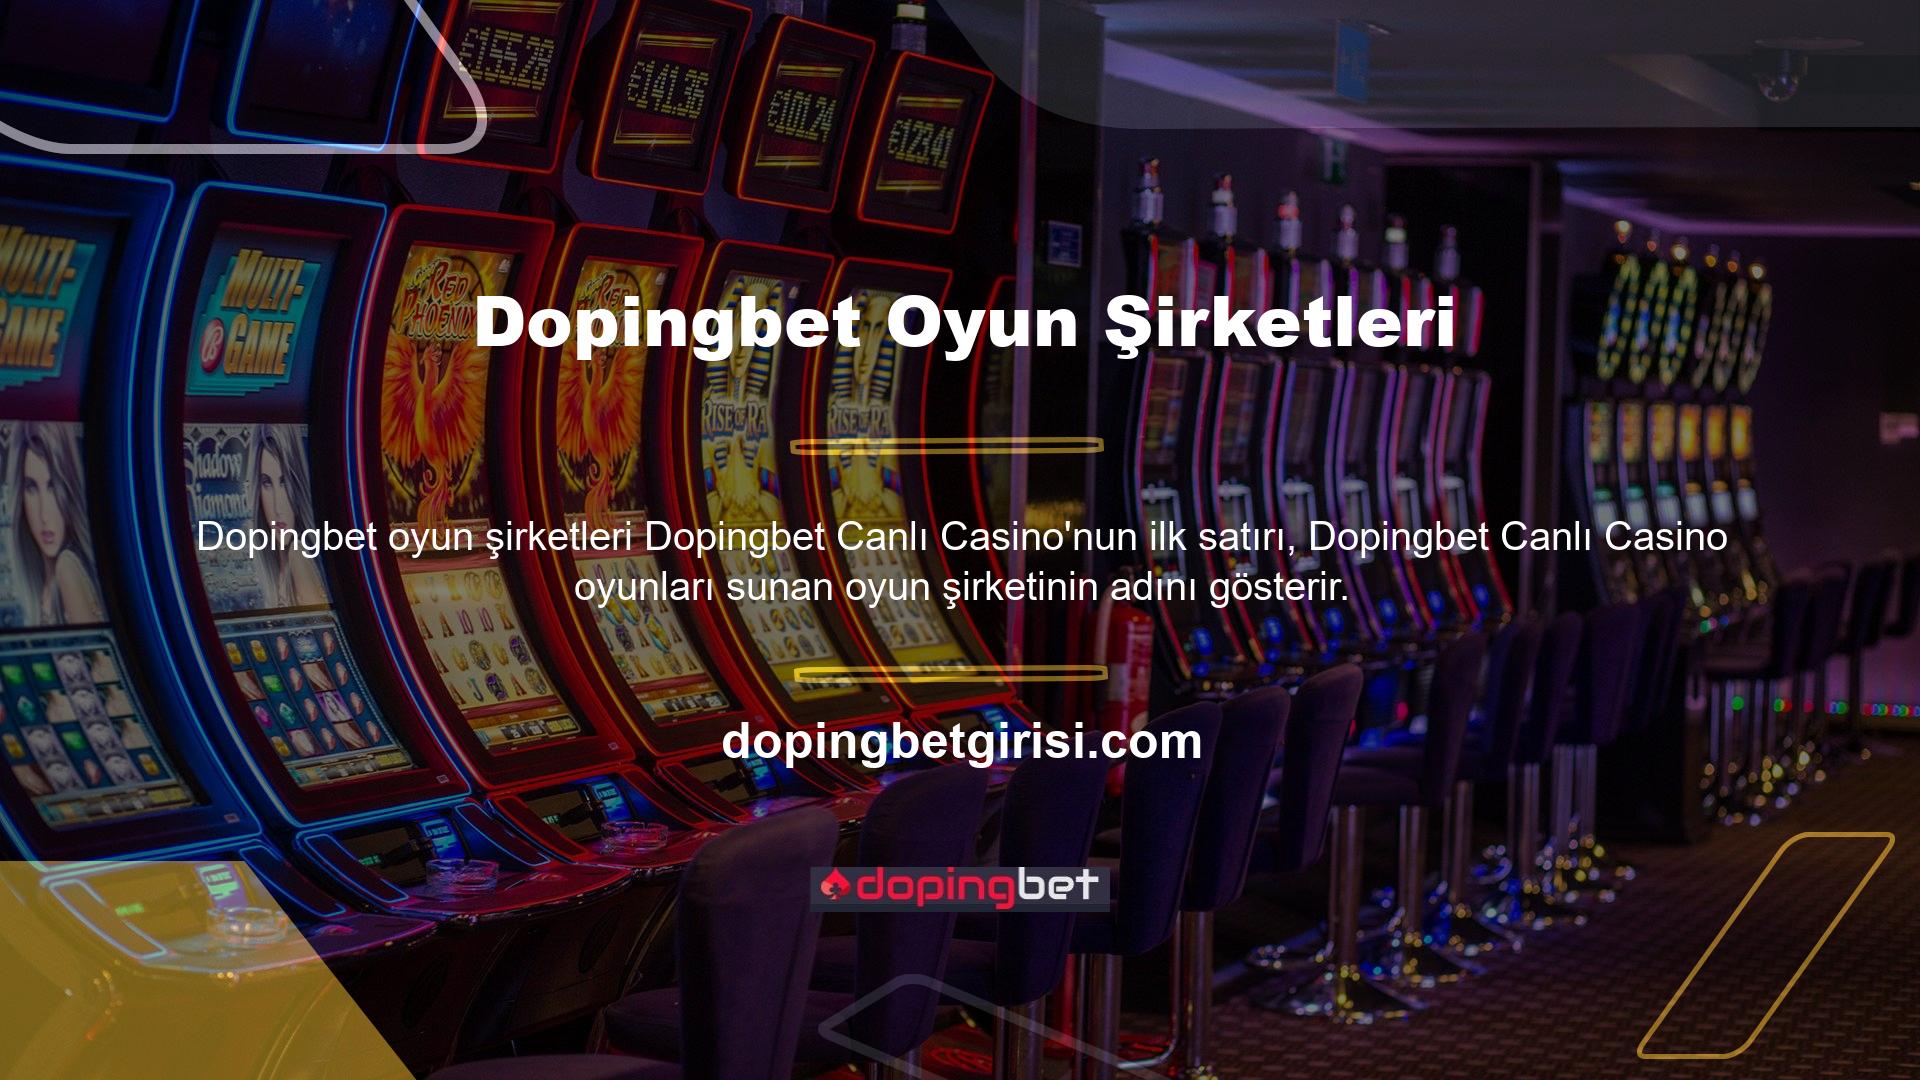 Dopingbet Canlı Casinolarından herhangi birine tıklamak sizi oyun masasına götürecektir